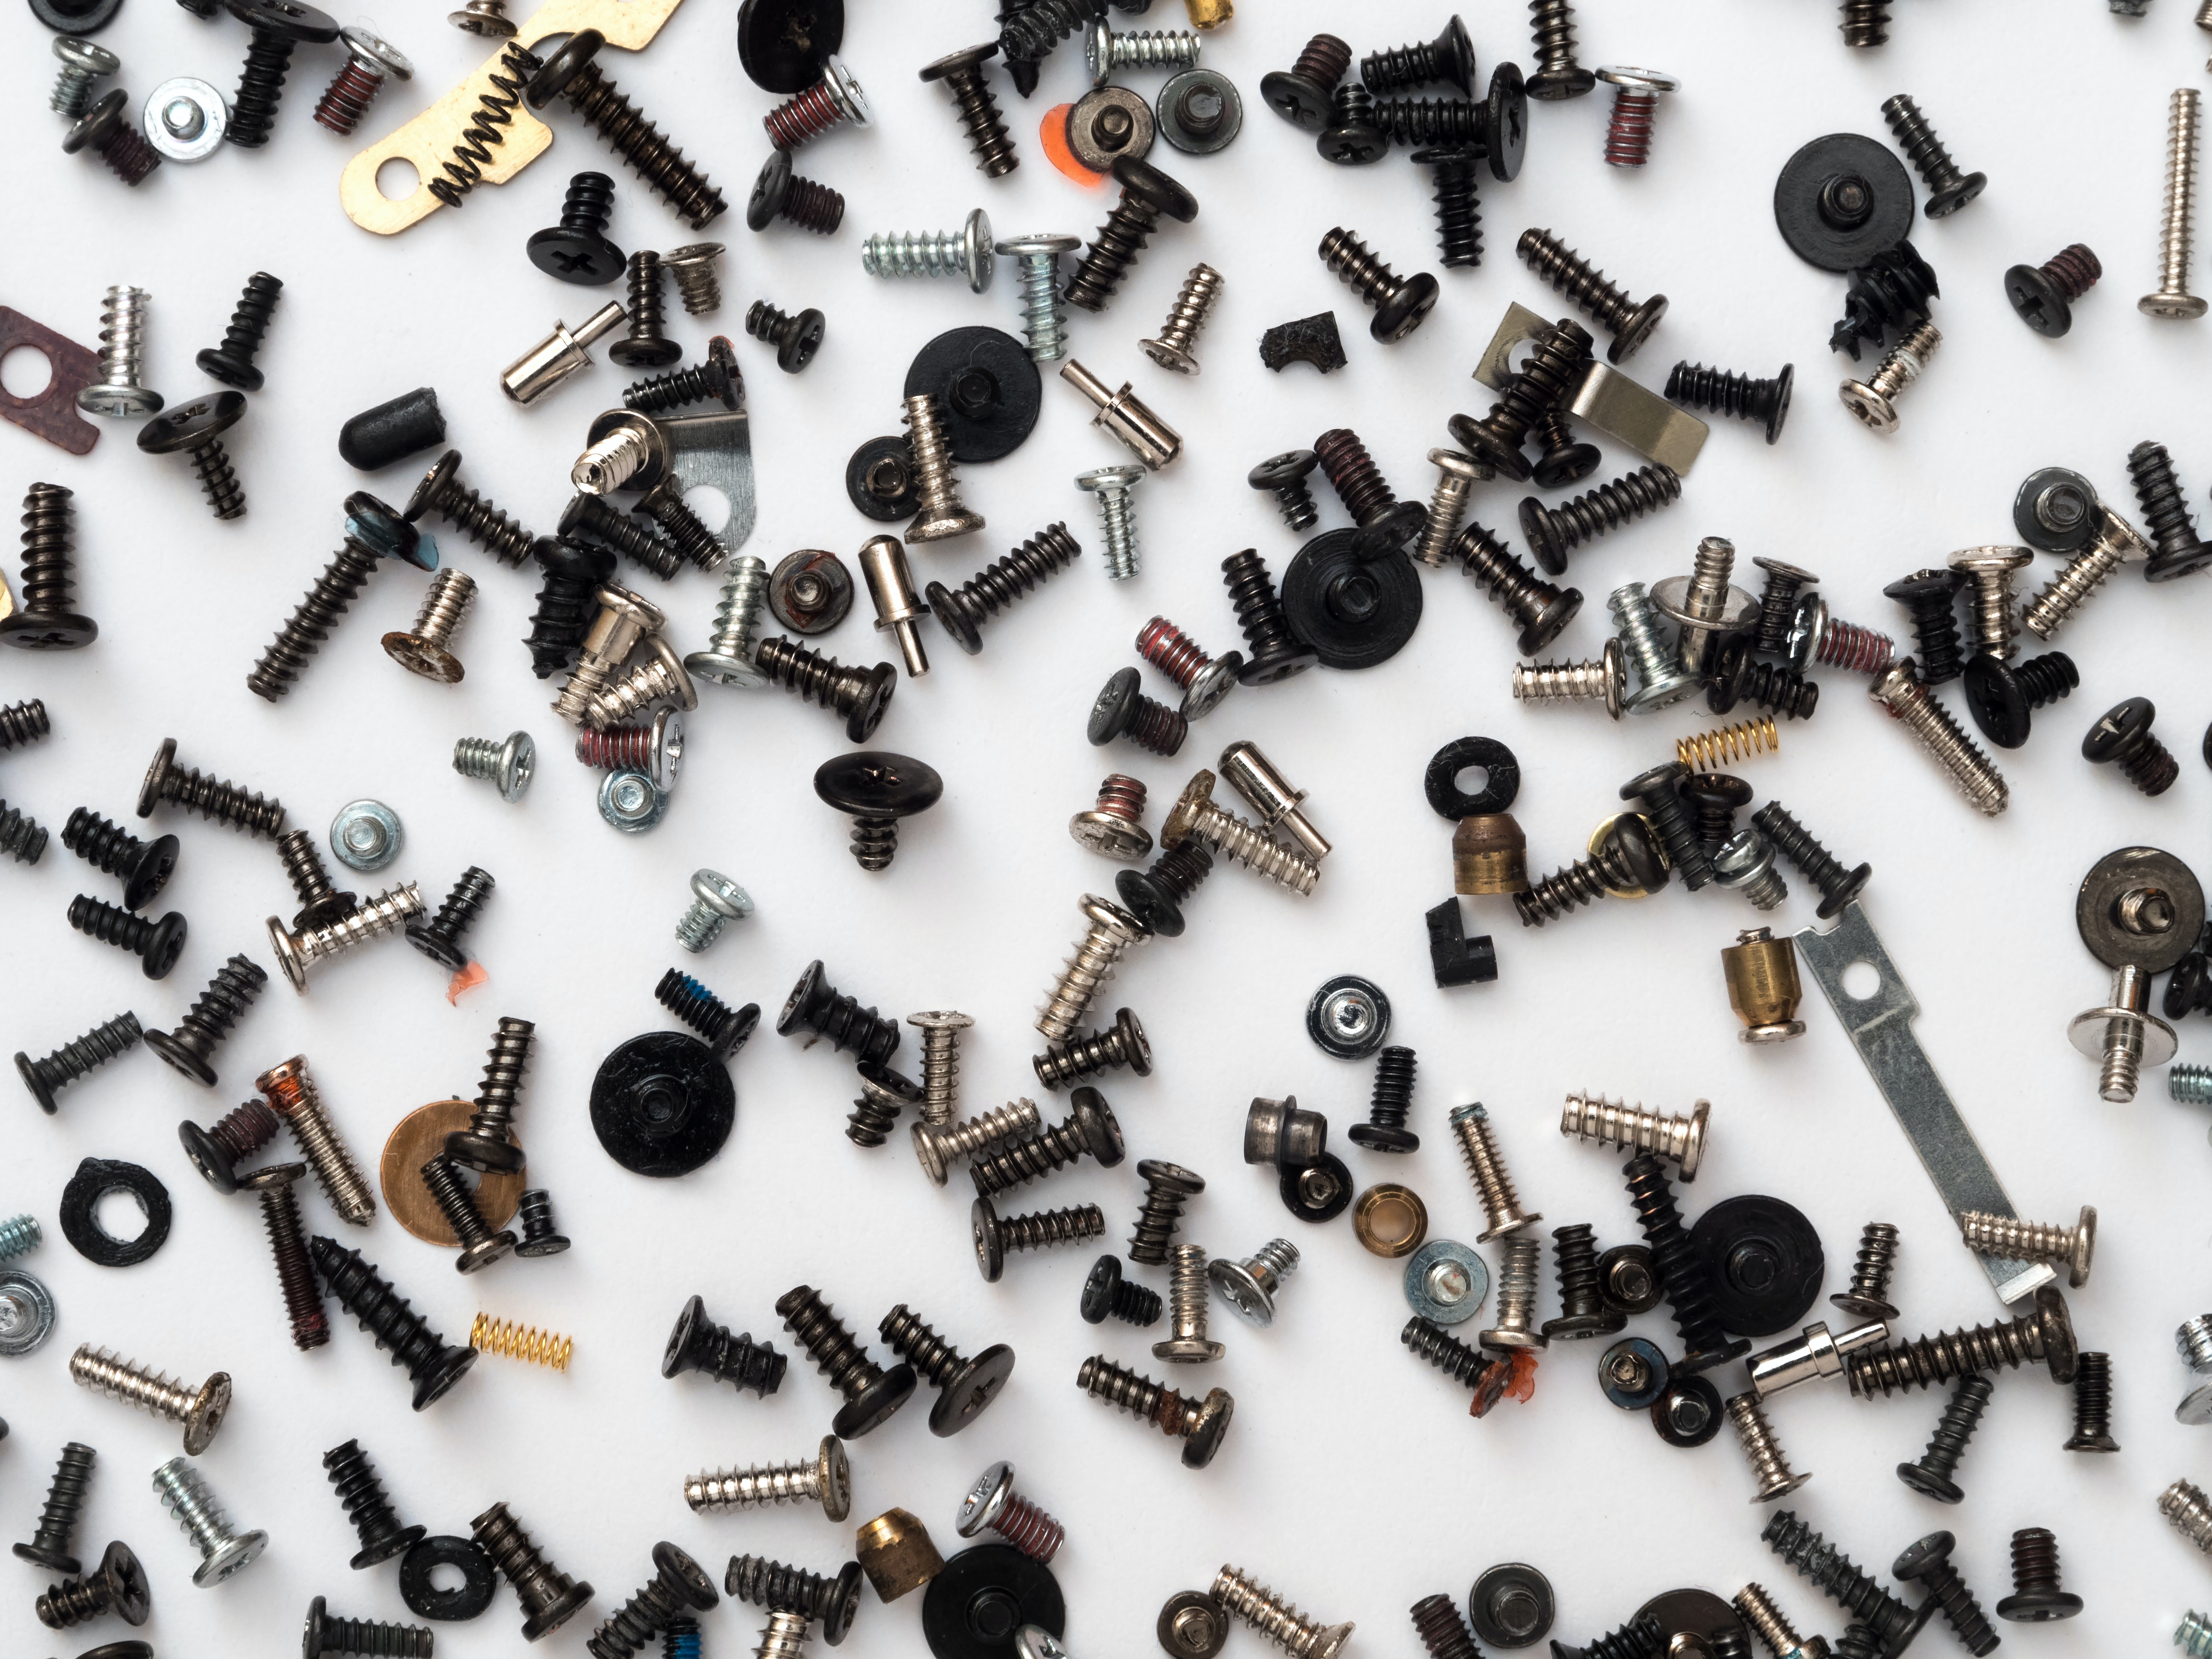 Do not sort your screws